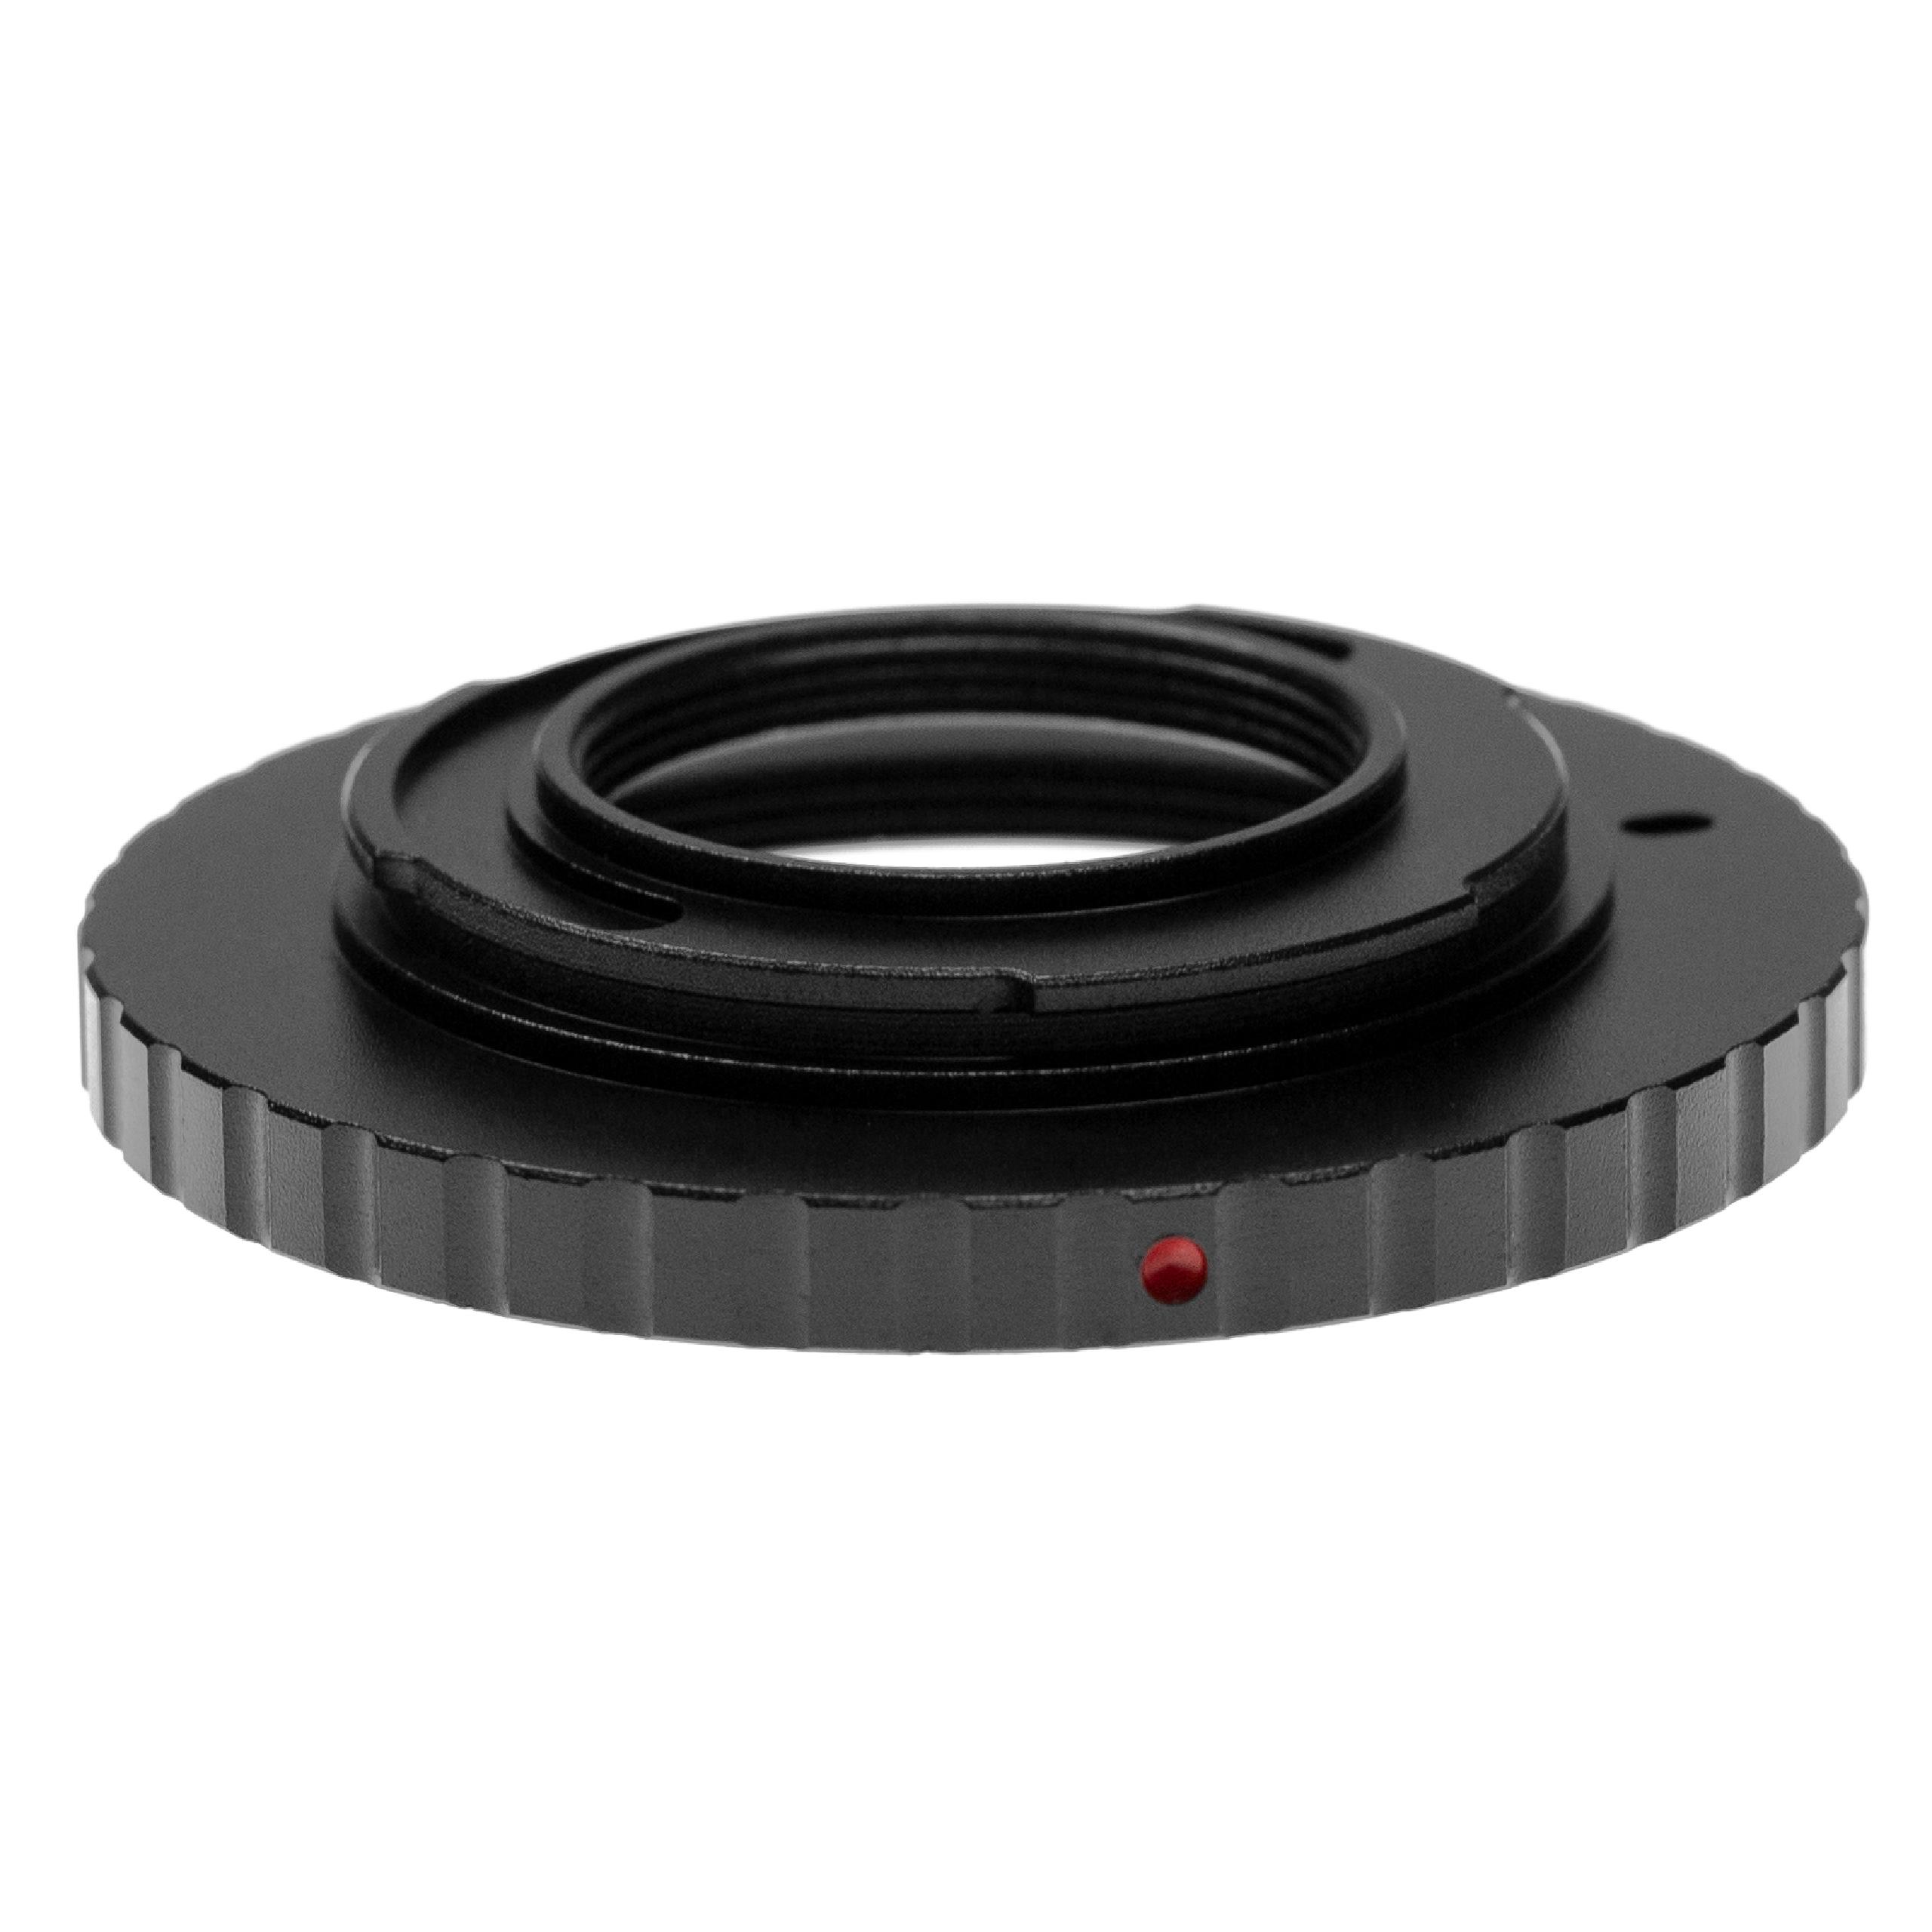 vhbw Anillo adaptador compatible con cámara 4/3 a objetivos M42 negro